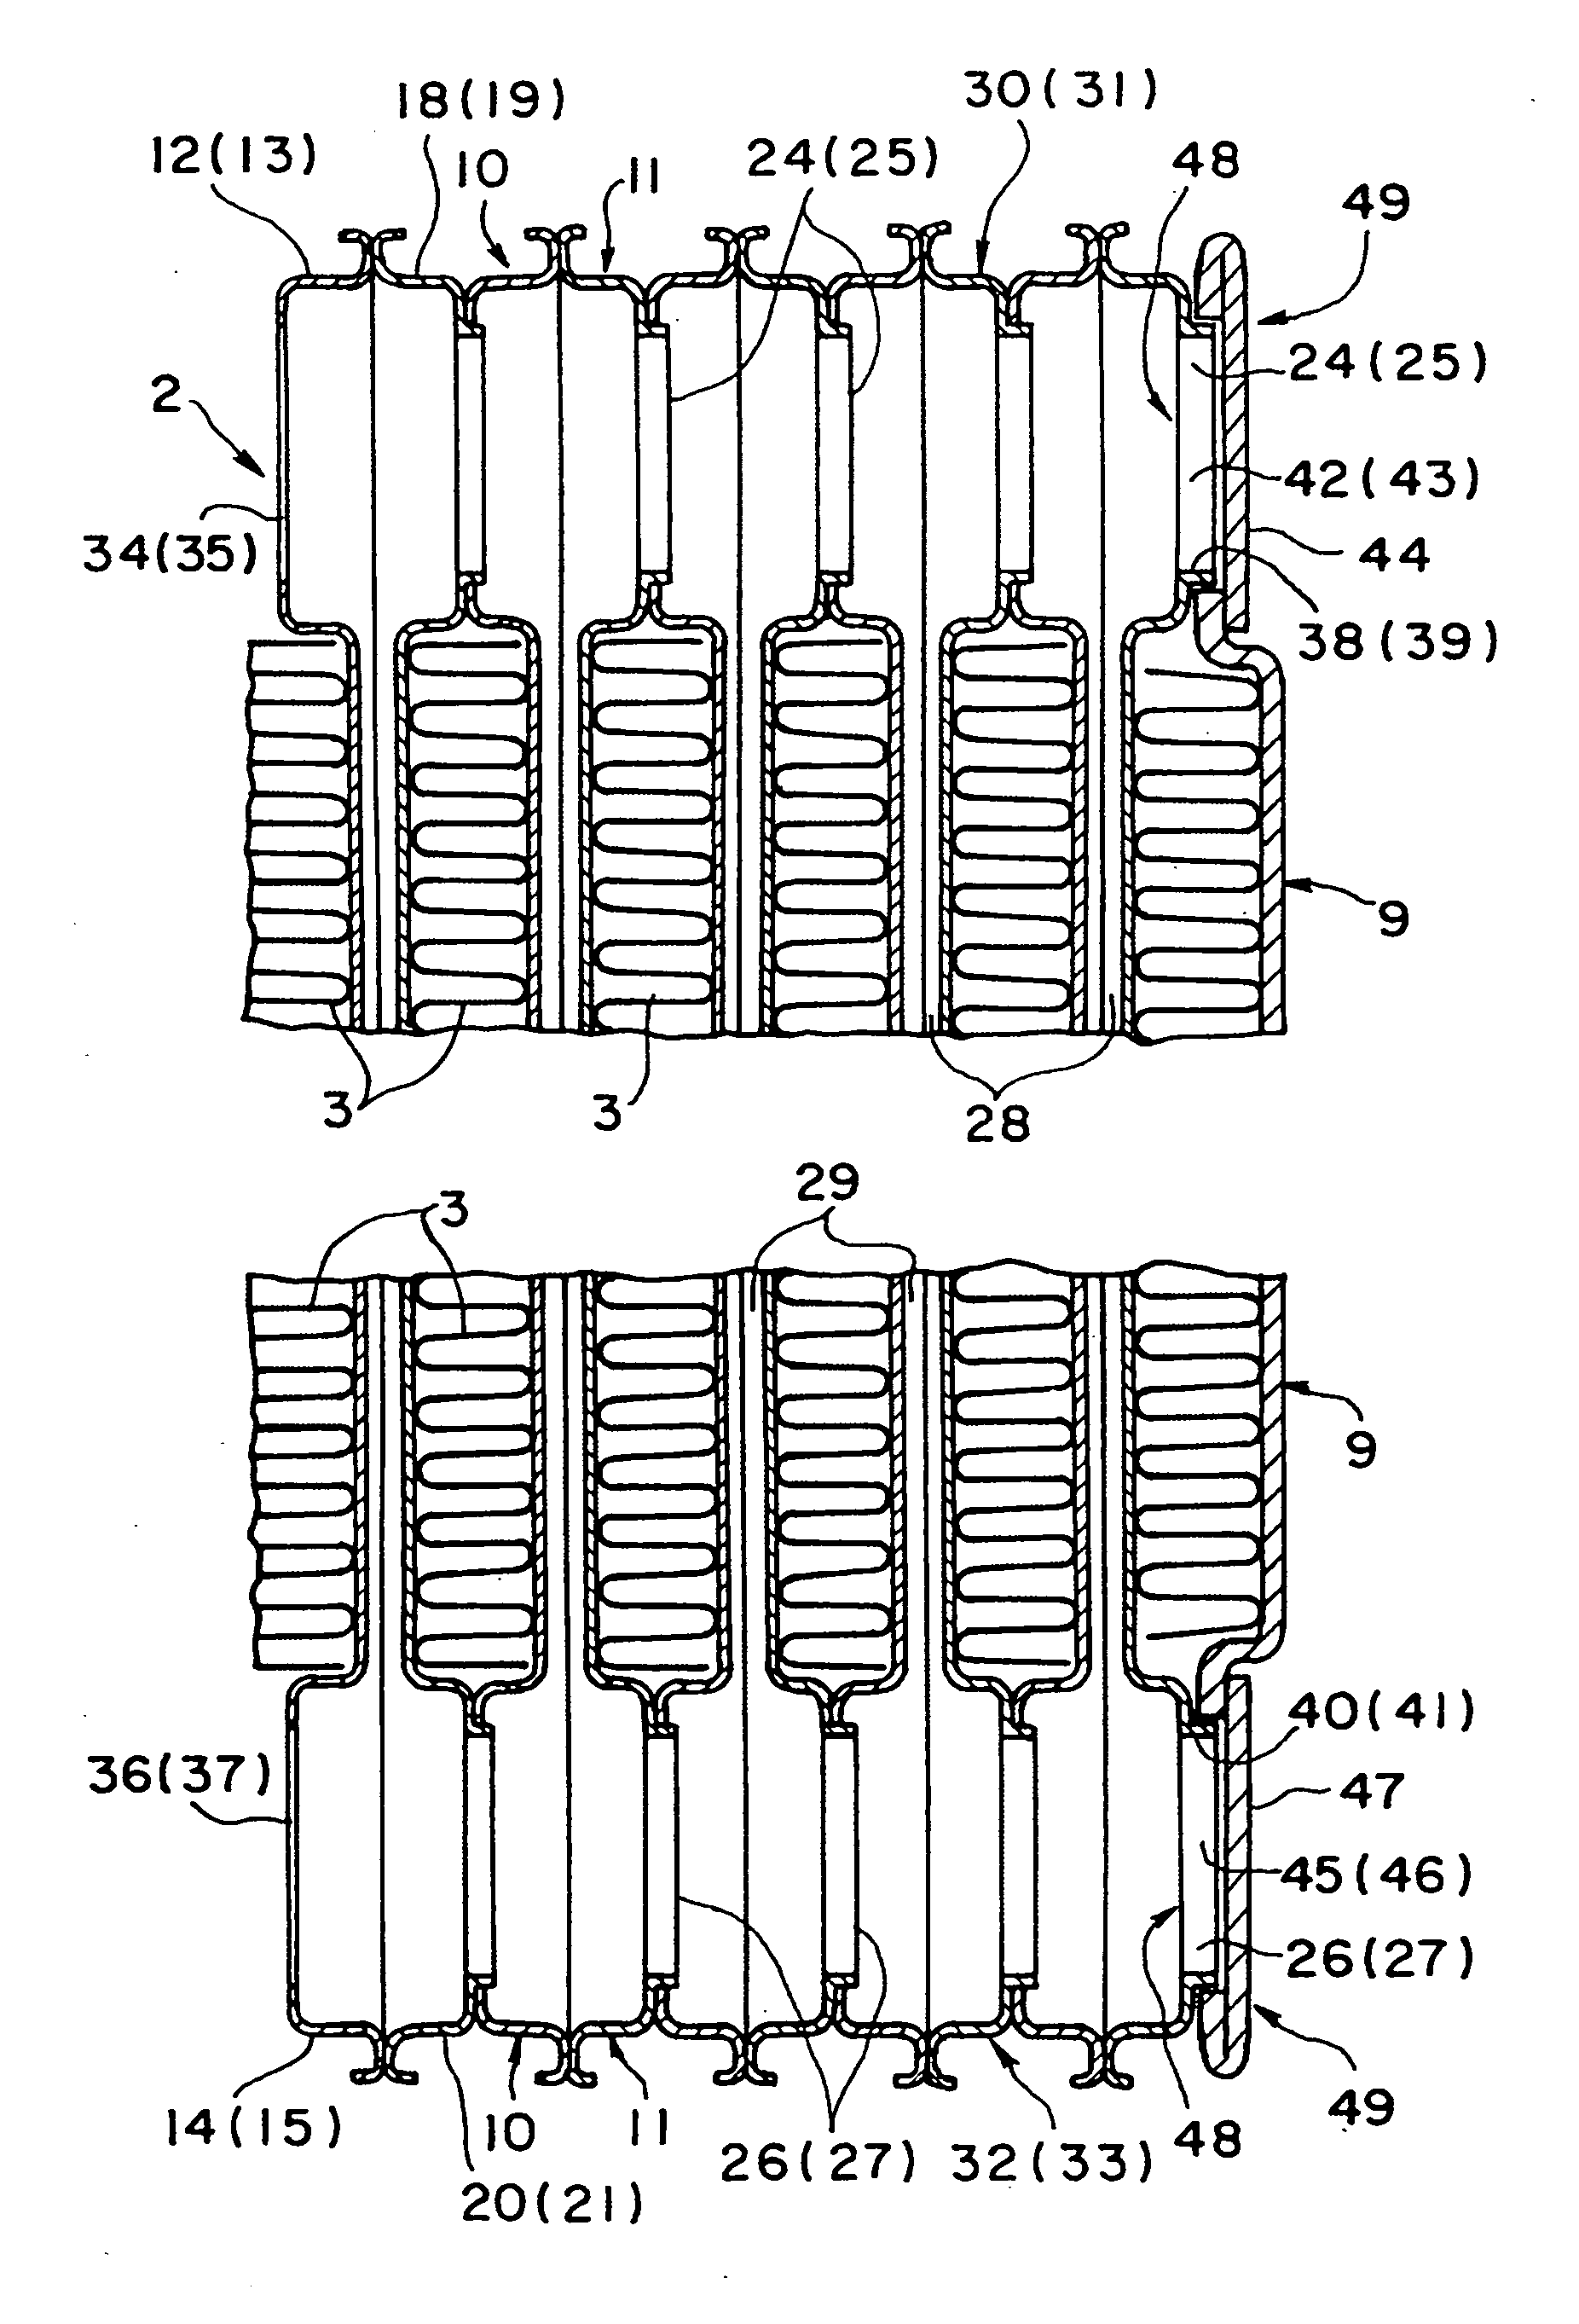 Stacking-type, multi-flow, heat exchanger